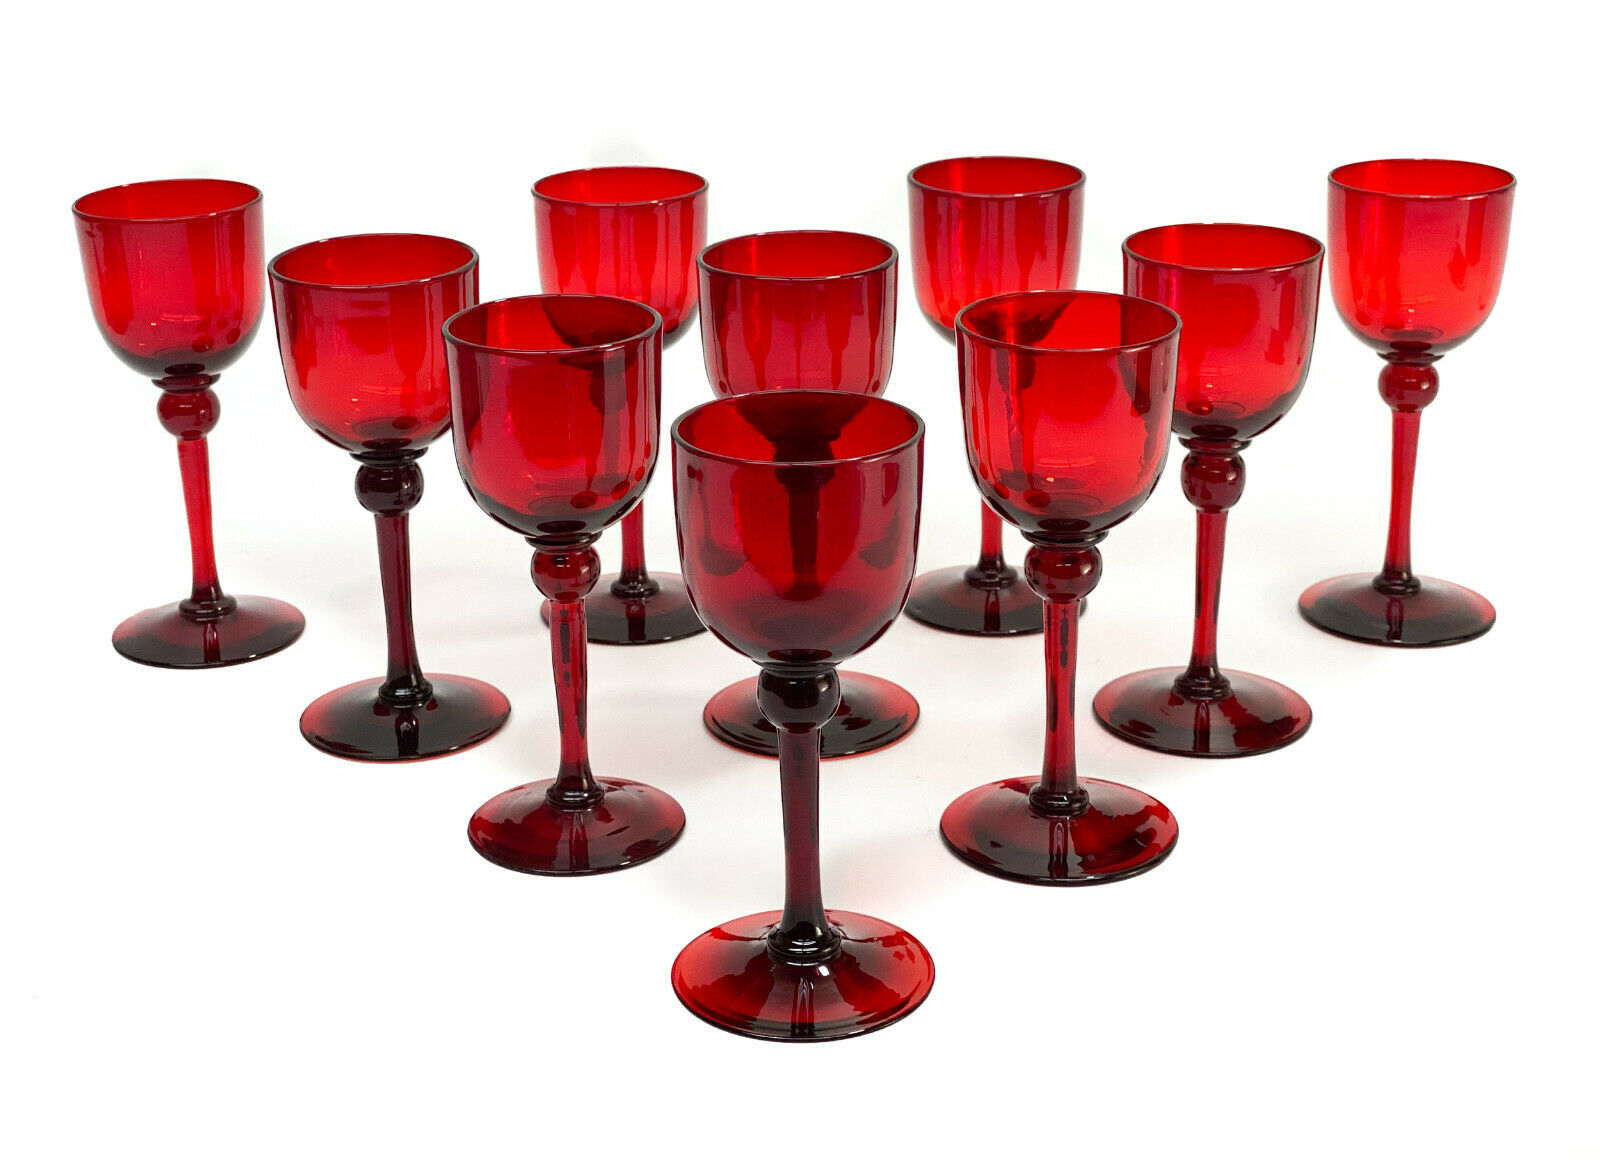 10 Steuben Selenium Red Glass Wine Goblets #6963. Polished Pontil